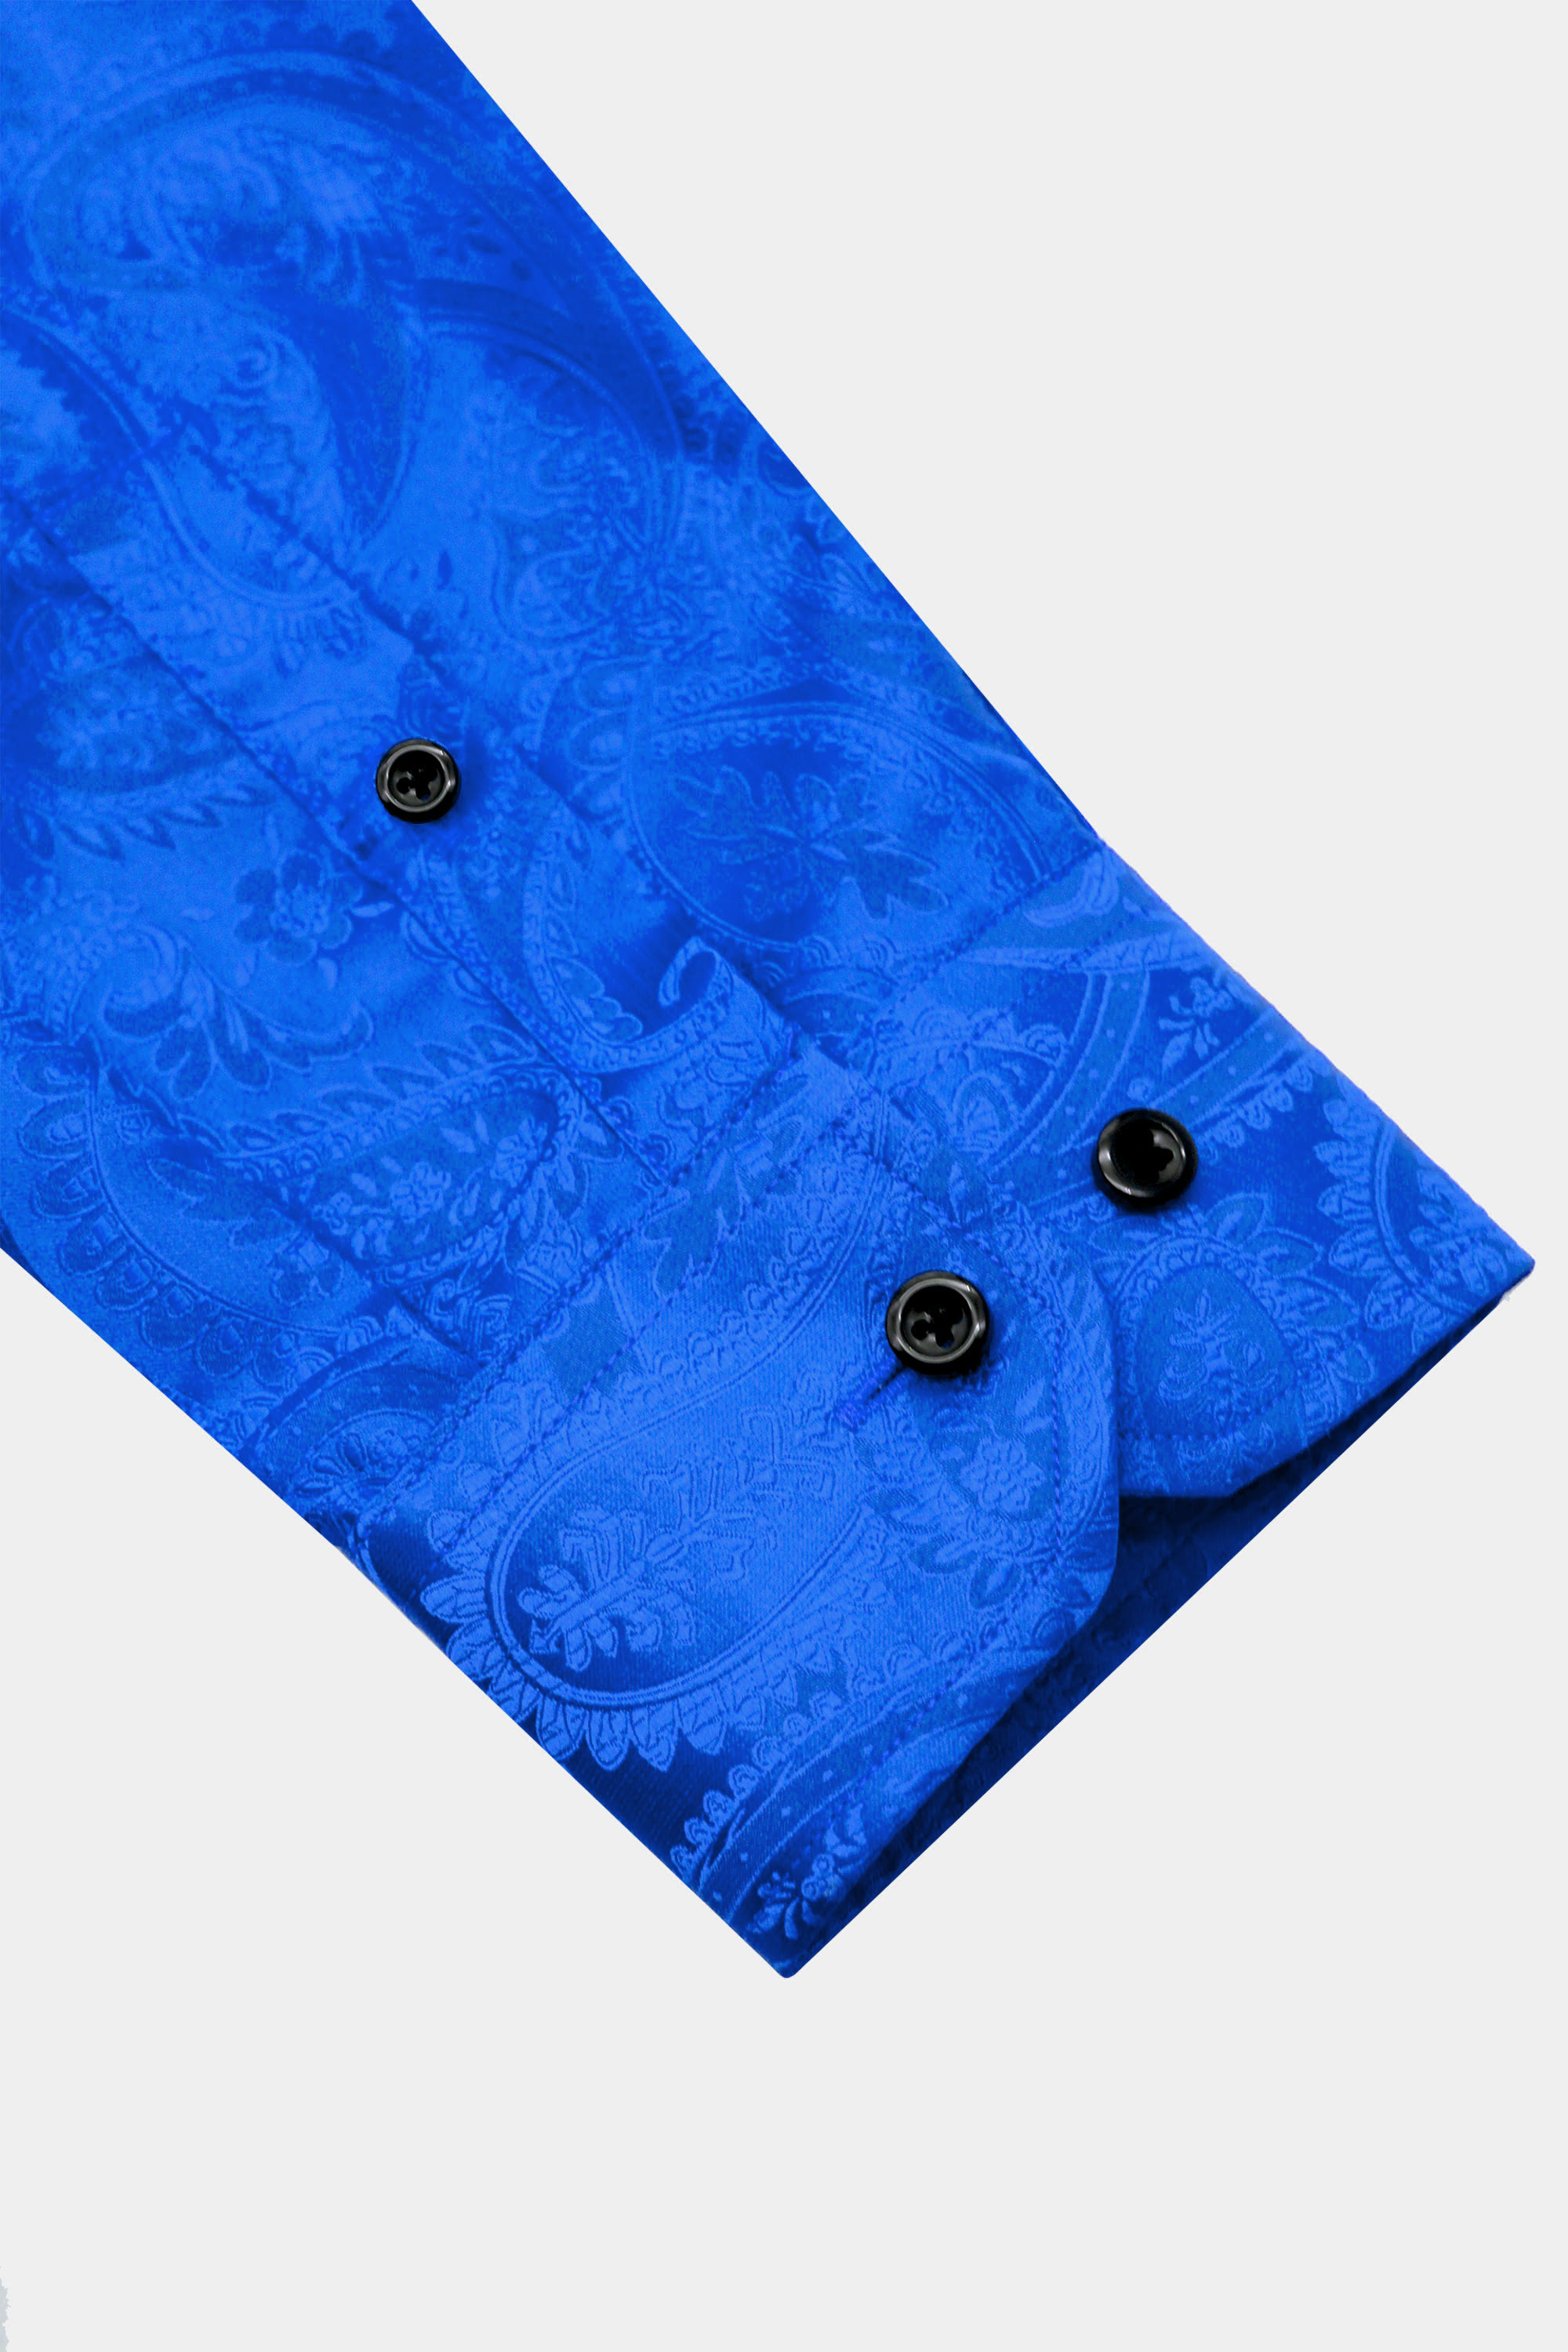 Mens-Floral-Blue-Dress-Shirt-from-Gentlem